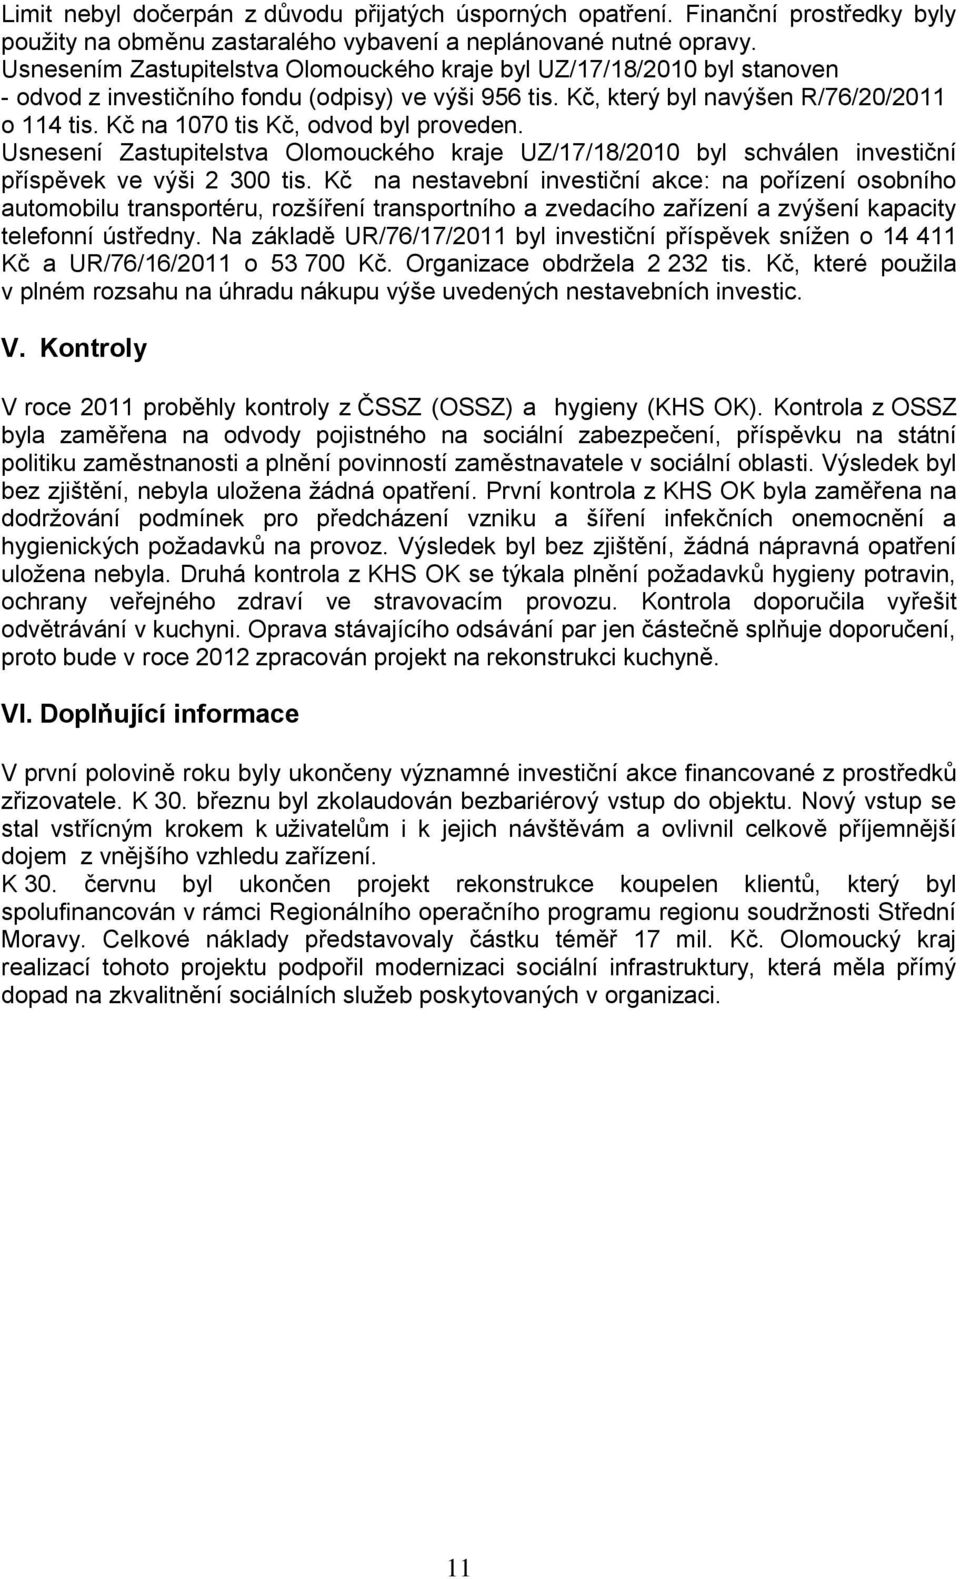 Kč na 1070 tis Kč, odvod byl proveden. Usnesení Zastupitelstva Olomouckého kraje UZ/17/18/2010 byl schválen investiční příspěvek ve výši 2 300 tis.